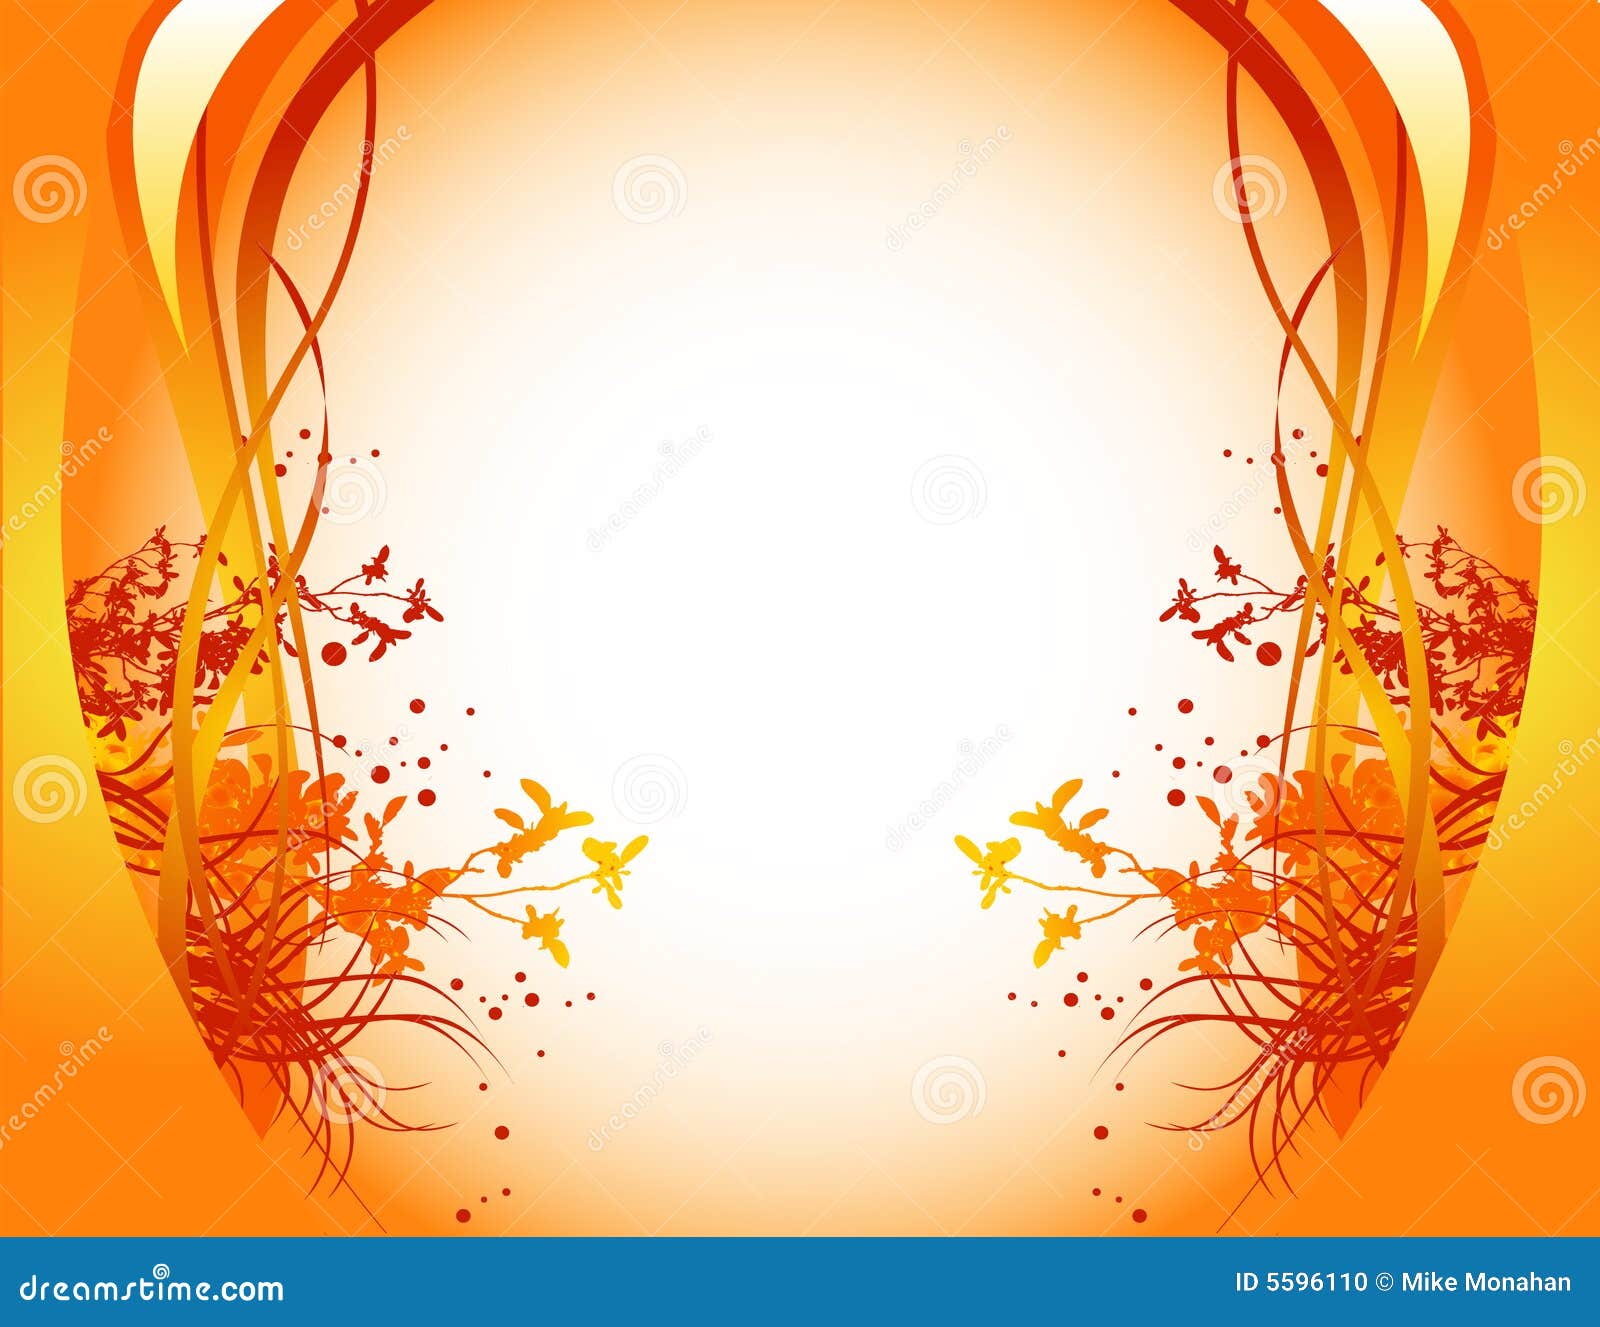 Orange Floral Background Stock Vector Illustration Of Color